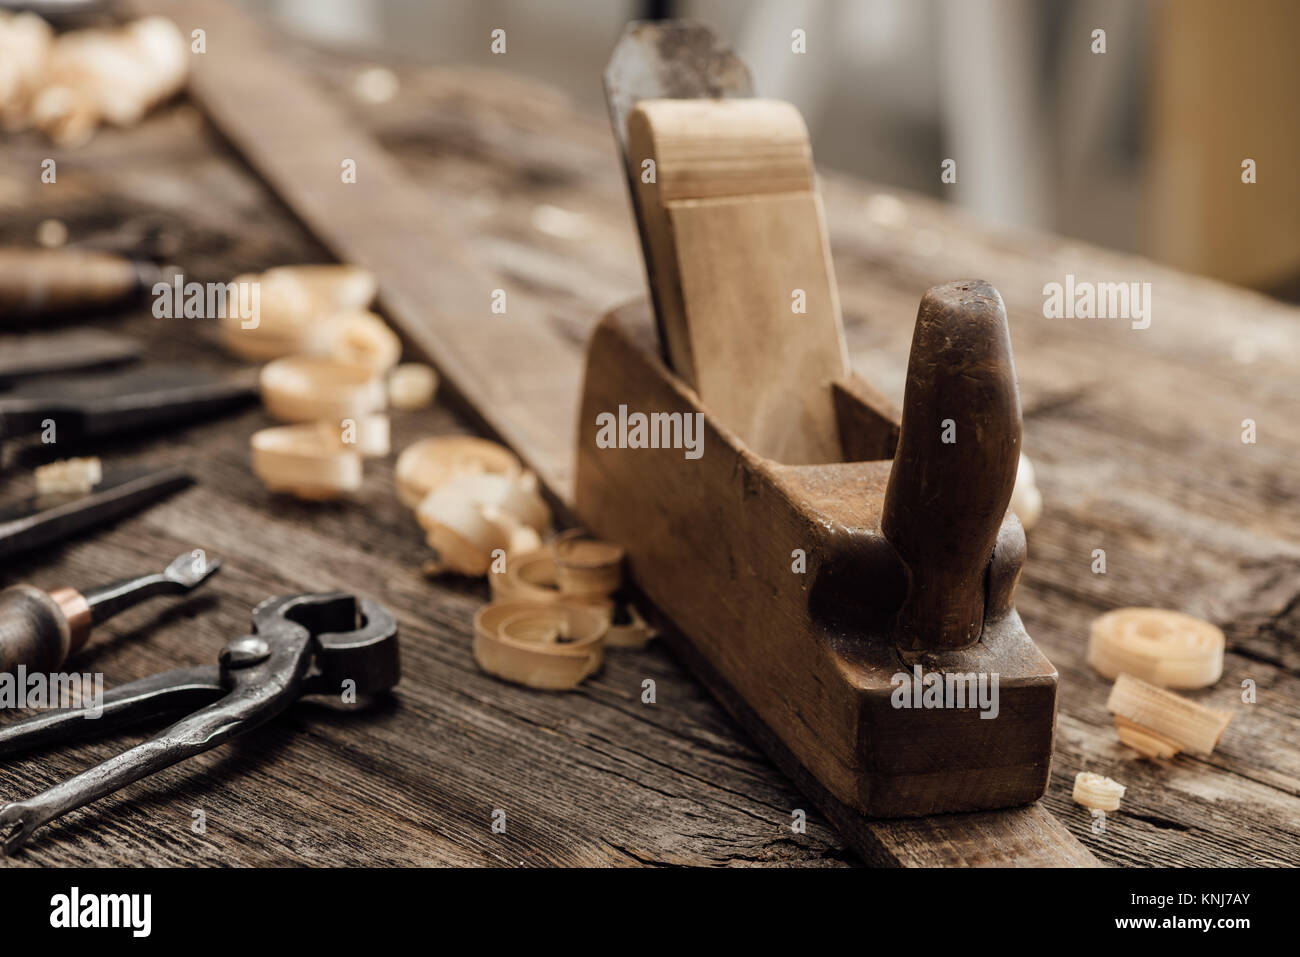 Holz Planer auf der Tischler Workbench und alte Werkzeuge für die Holzbearbeitung, Zimmerei und tun es sich Konzept Stockfoto